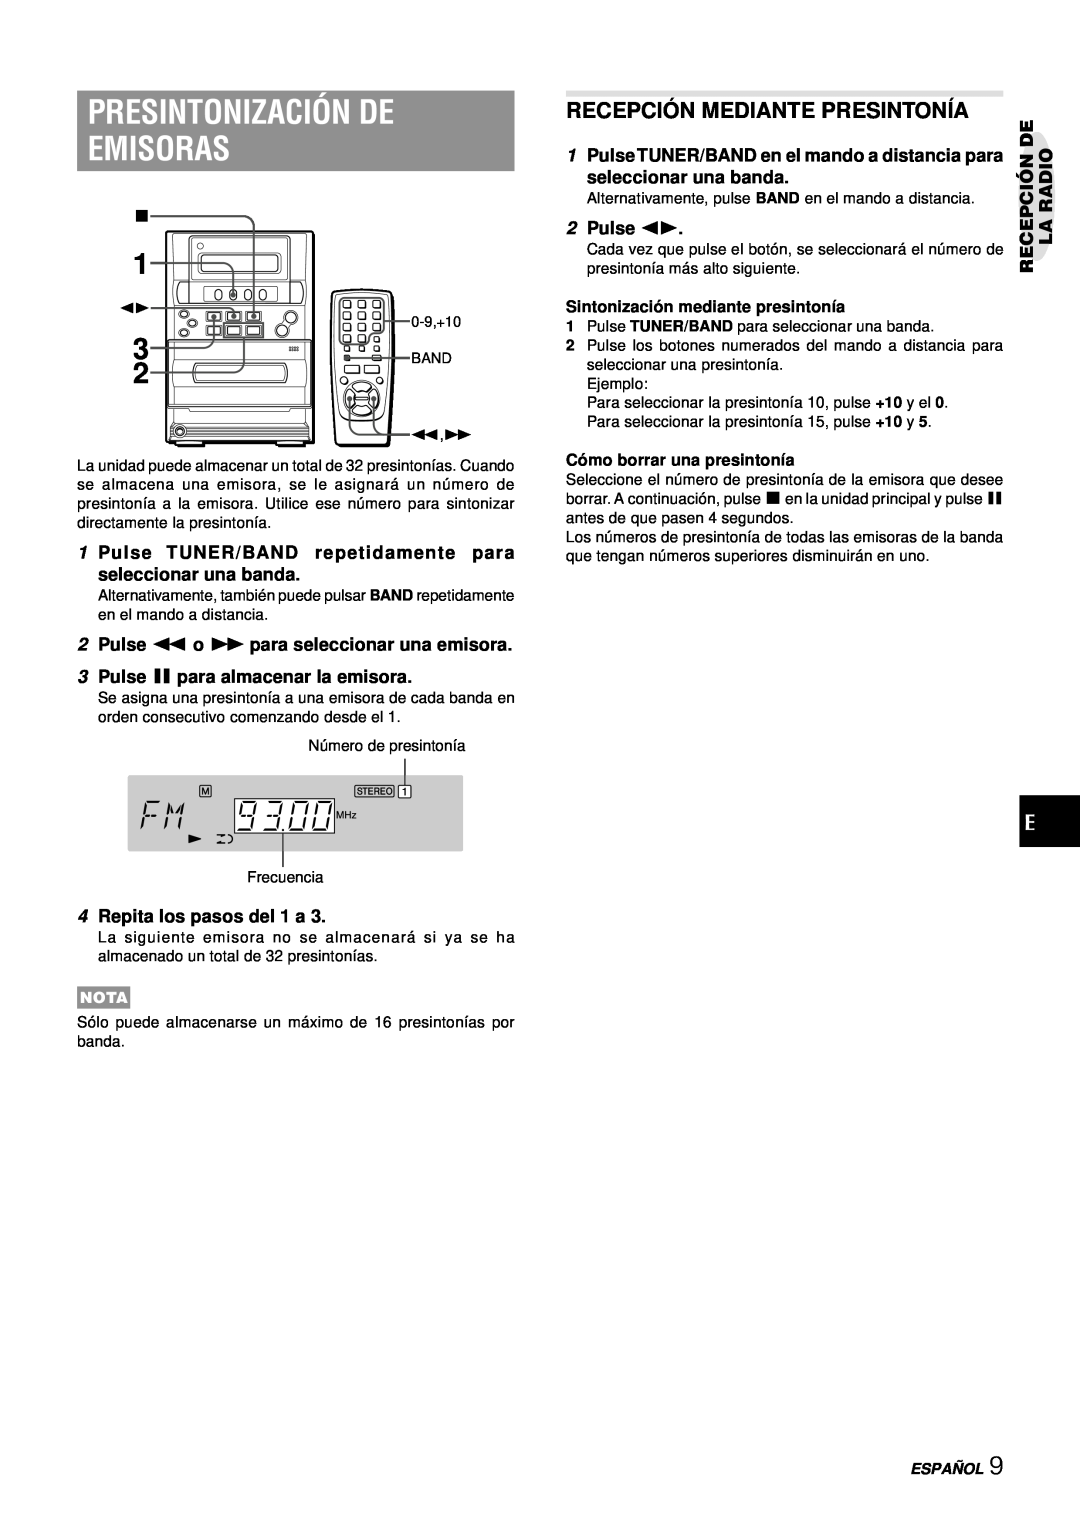 Aiwa LCX-357 Presintonización De Emisoras, Recepció N Mediante Presintonía, 3Pulse a para almacenar la emisora, 2Pulse d 